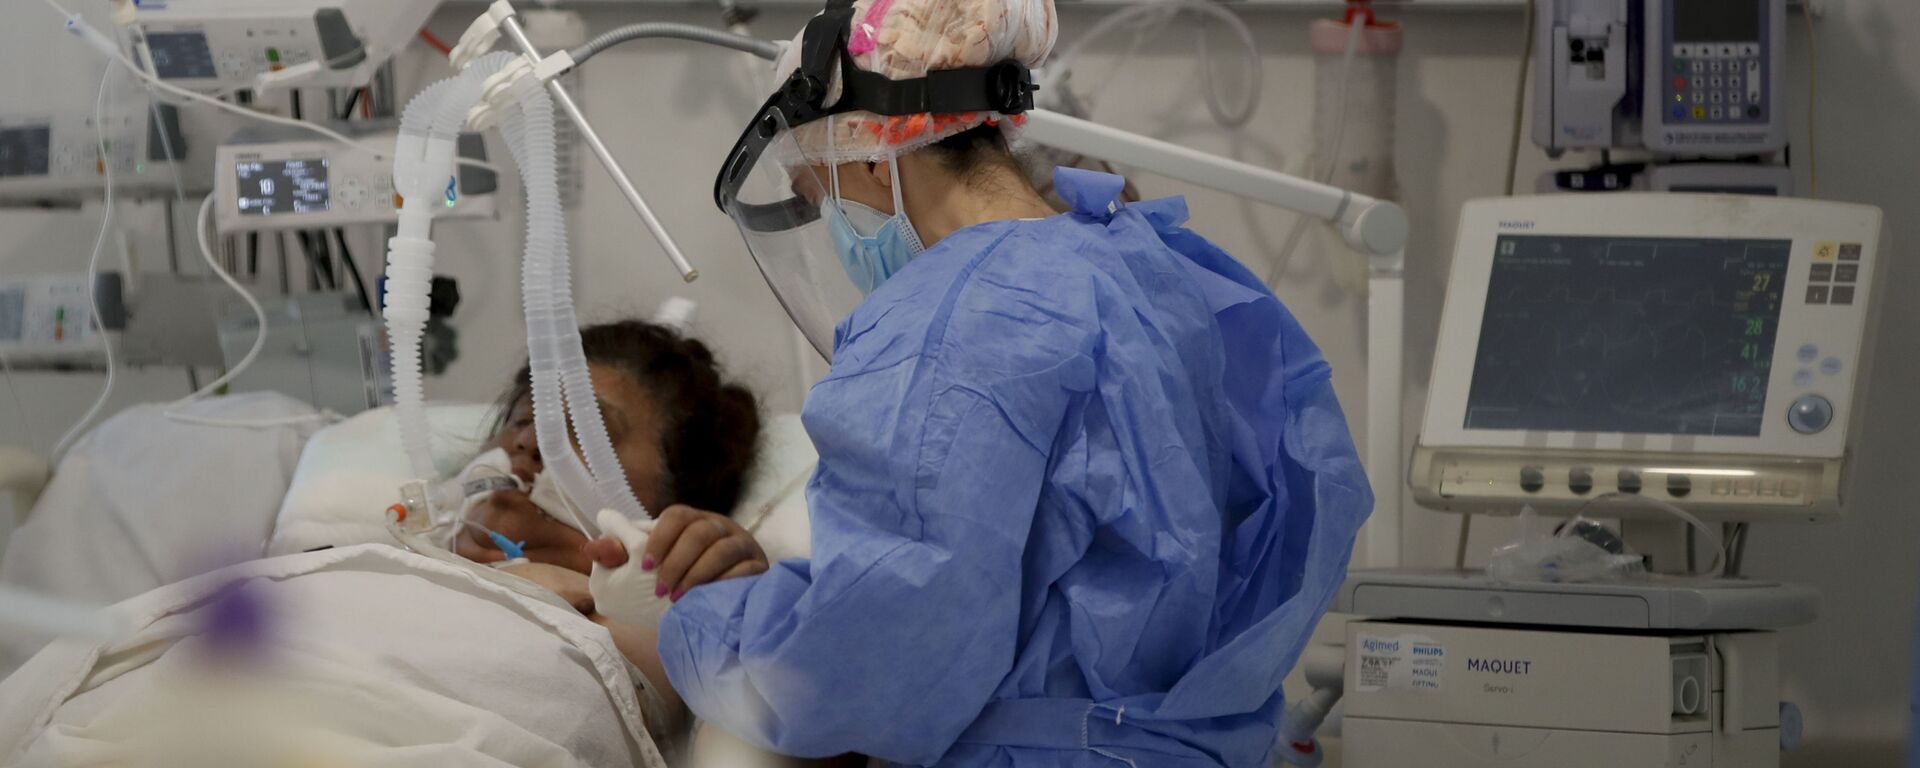 Una trabajadora de la salud atiende a un paciente en una unidad de cuidados intensivos designada para personas infectadas con coronavirus en un hospital en Buenos Aires (Argentina) - Sputnik Mundo, 1920, 10.11.2021